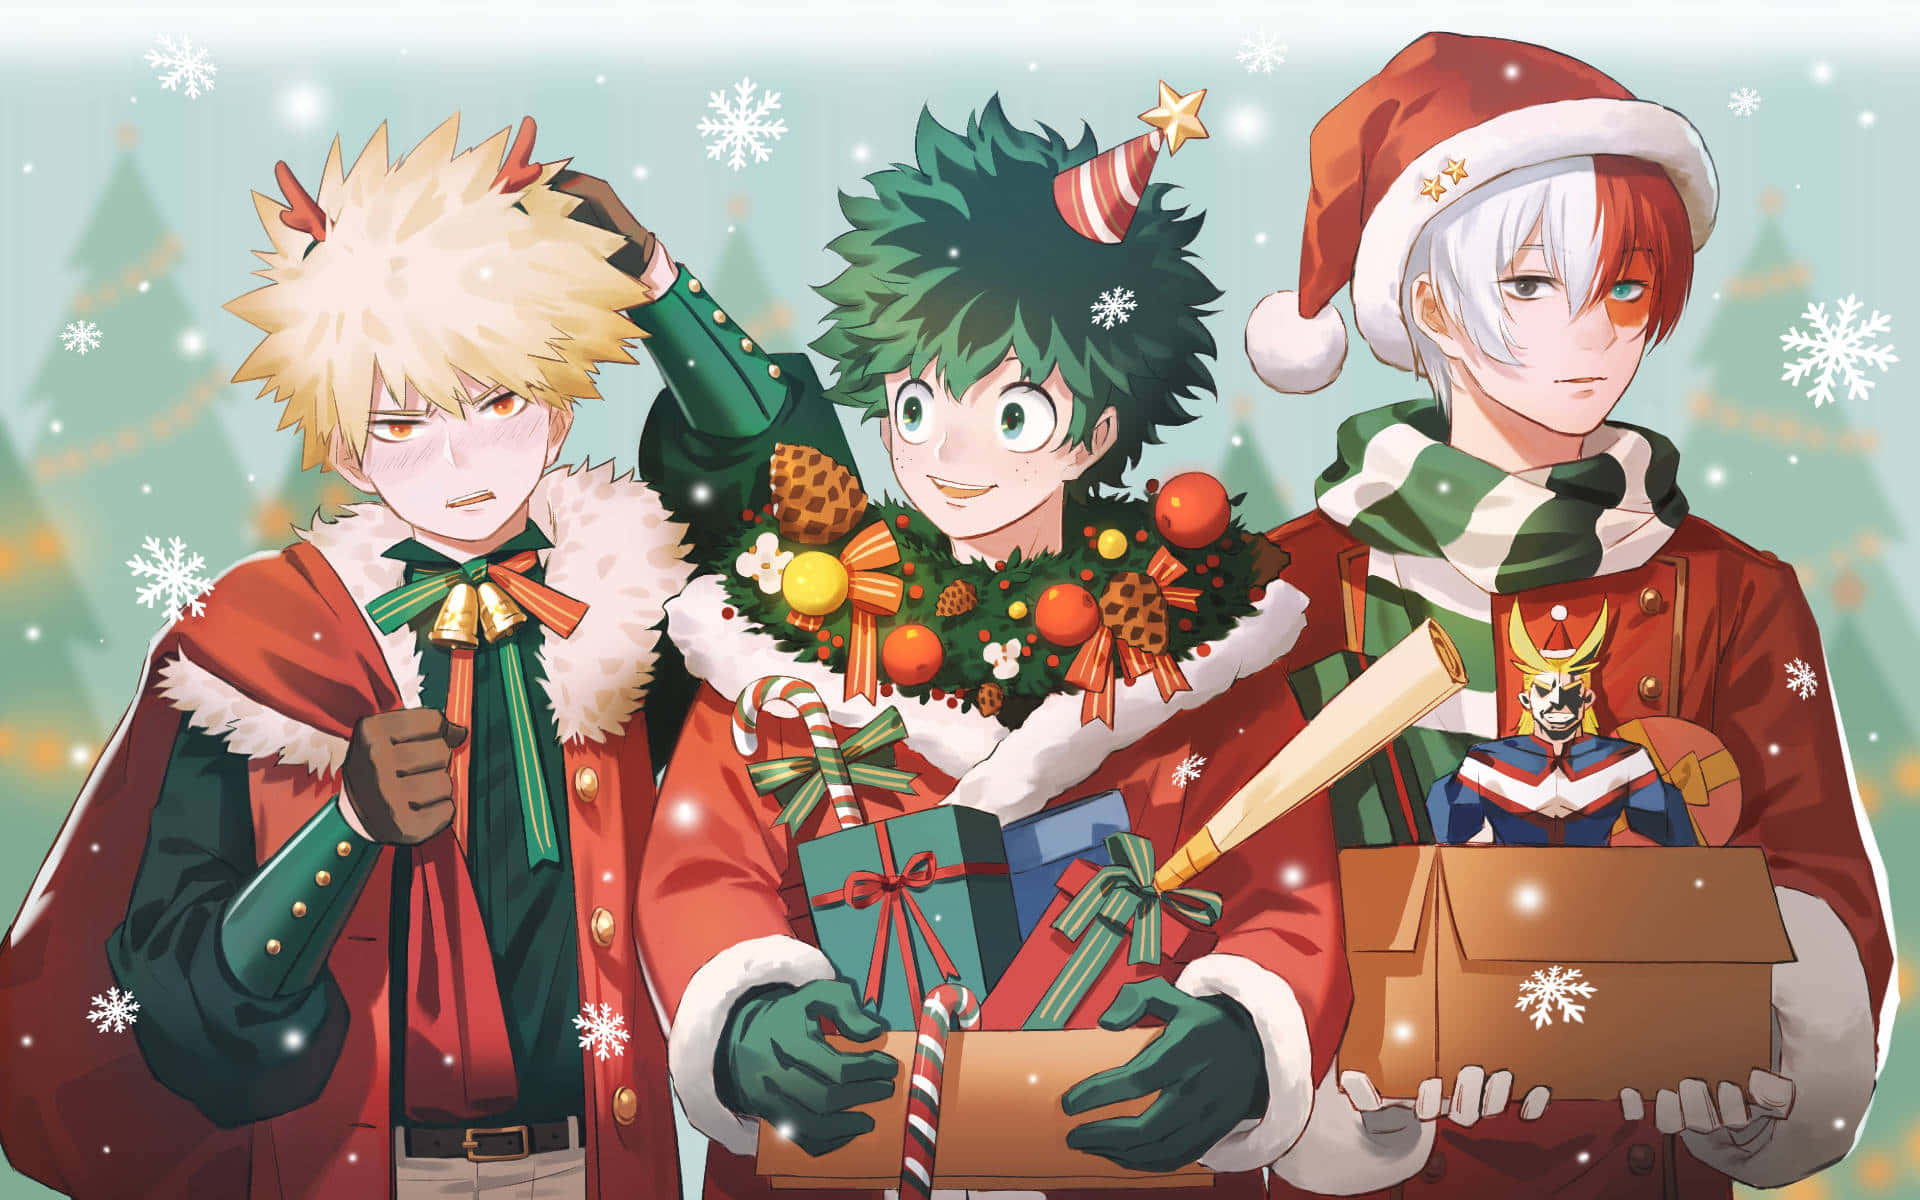 Eineaufmunternde Anime Weihnachten